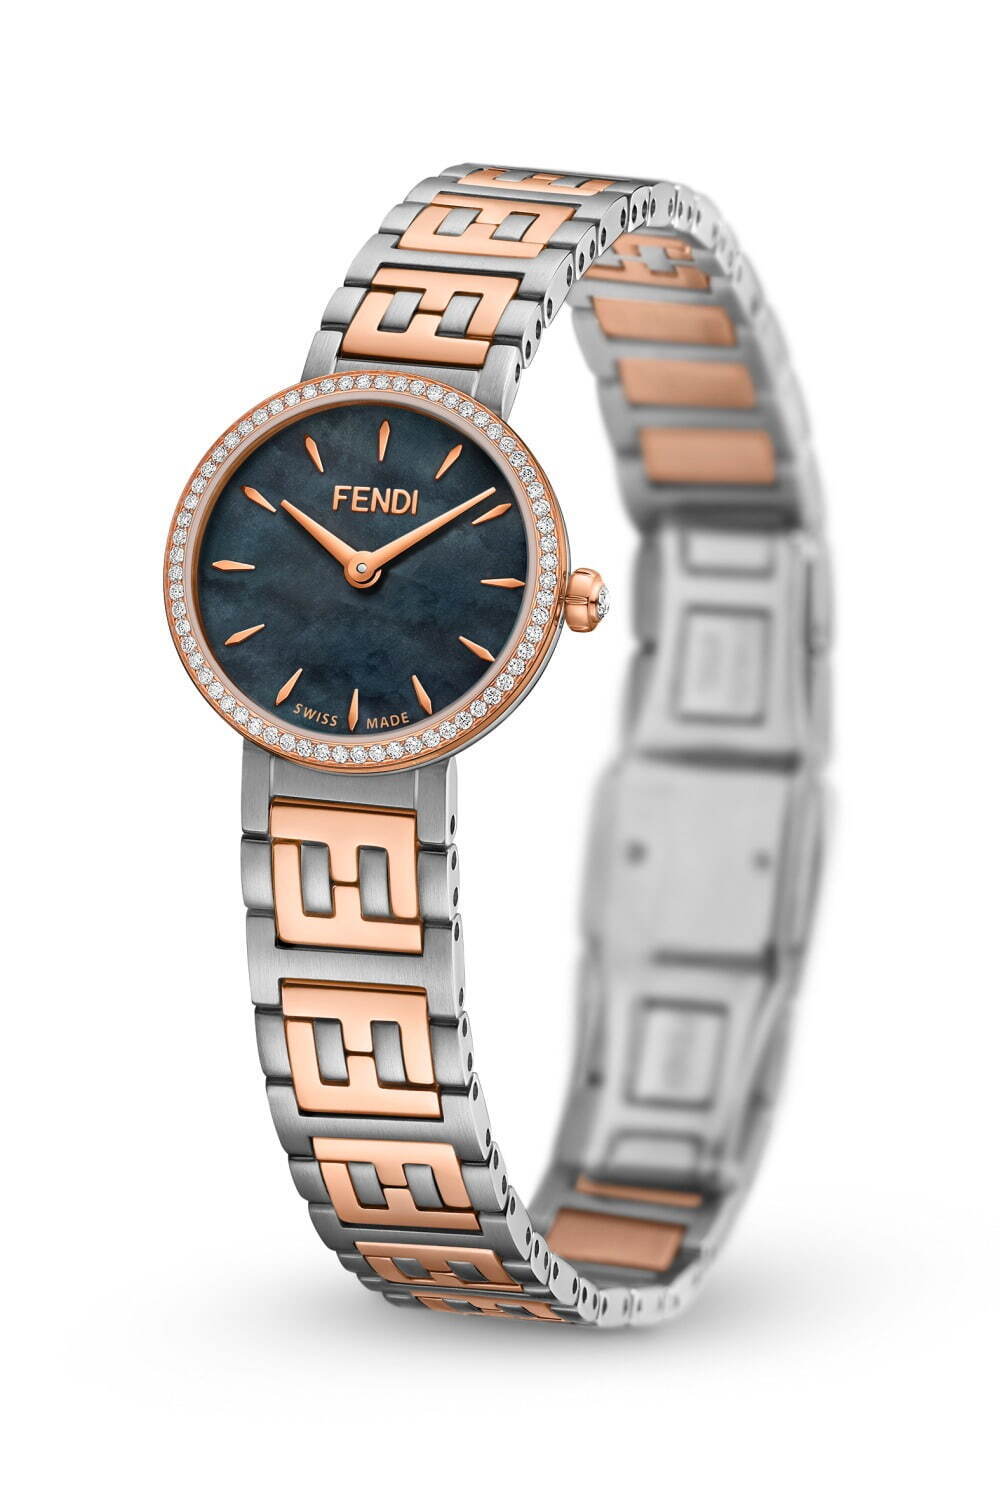 フェンディのウィメンズ向け新作腕時計、FFロゴのブレスレット×64個の 